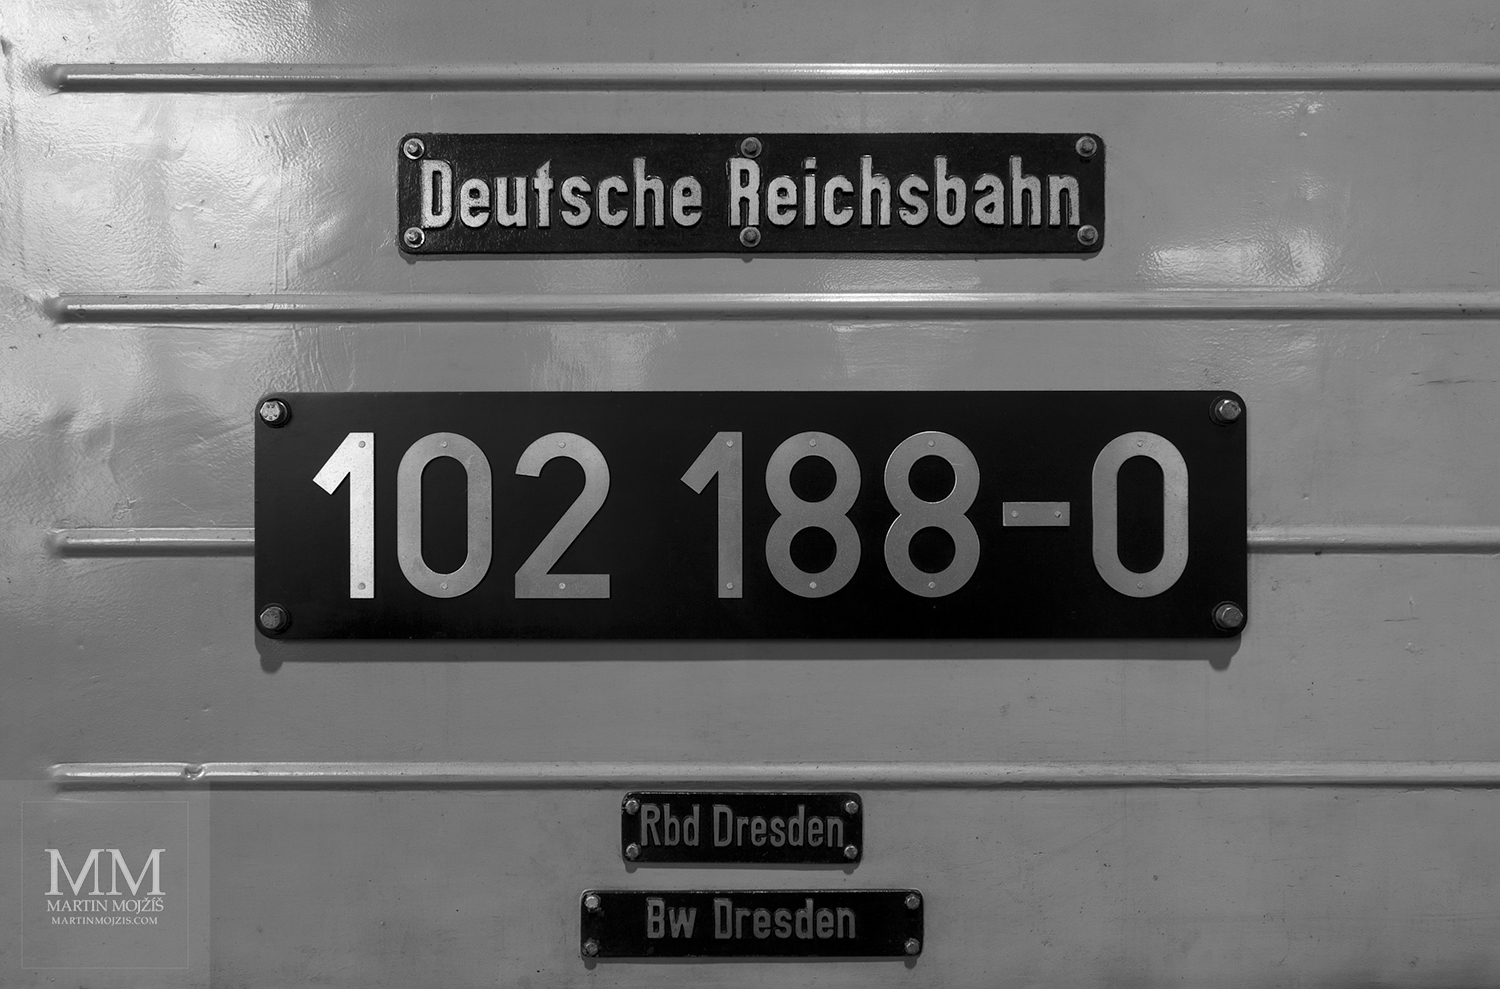 Deutsche Reichsbahn, 102 188-0, Rbd Dresden, Bw Dresden lettering on the locomotive. Eisenbahnmuseum Dresden – Dresden Railway Museum.